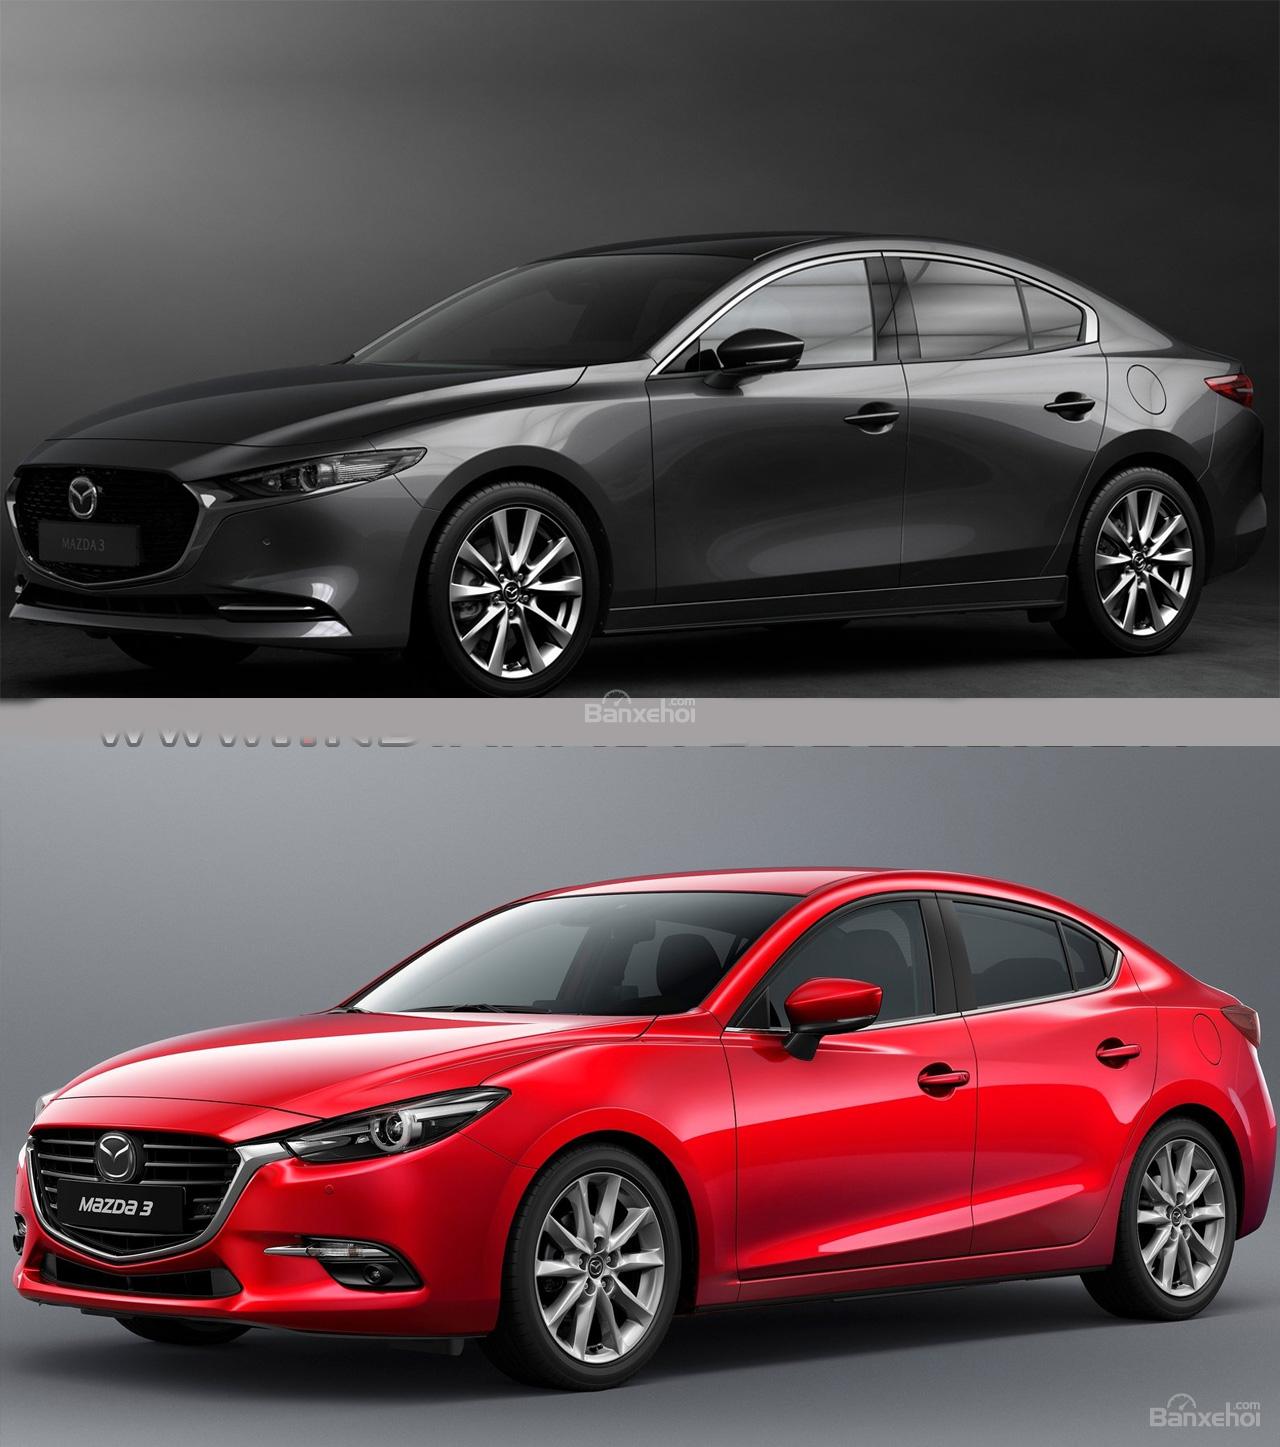 So sánh Mazda 3 2019 thế hệ mới và cũ qua hình ảnh trực quan - Ảnh 3.